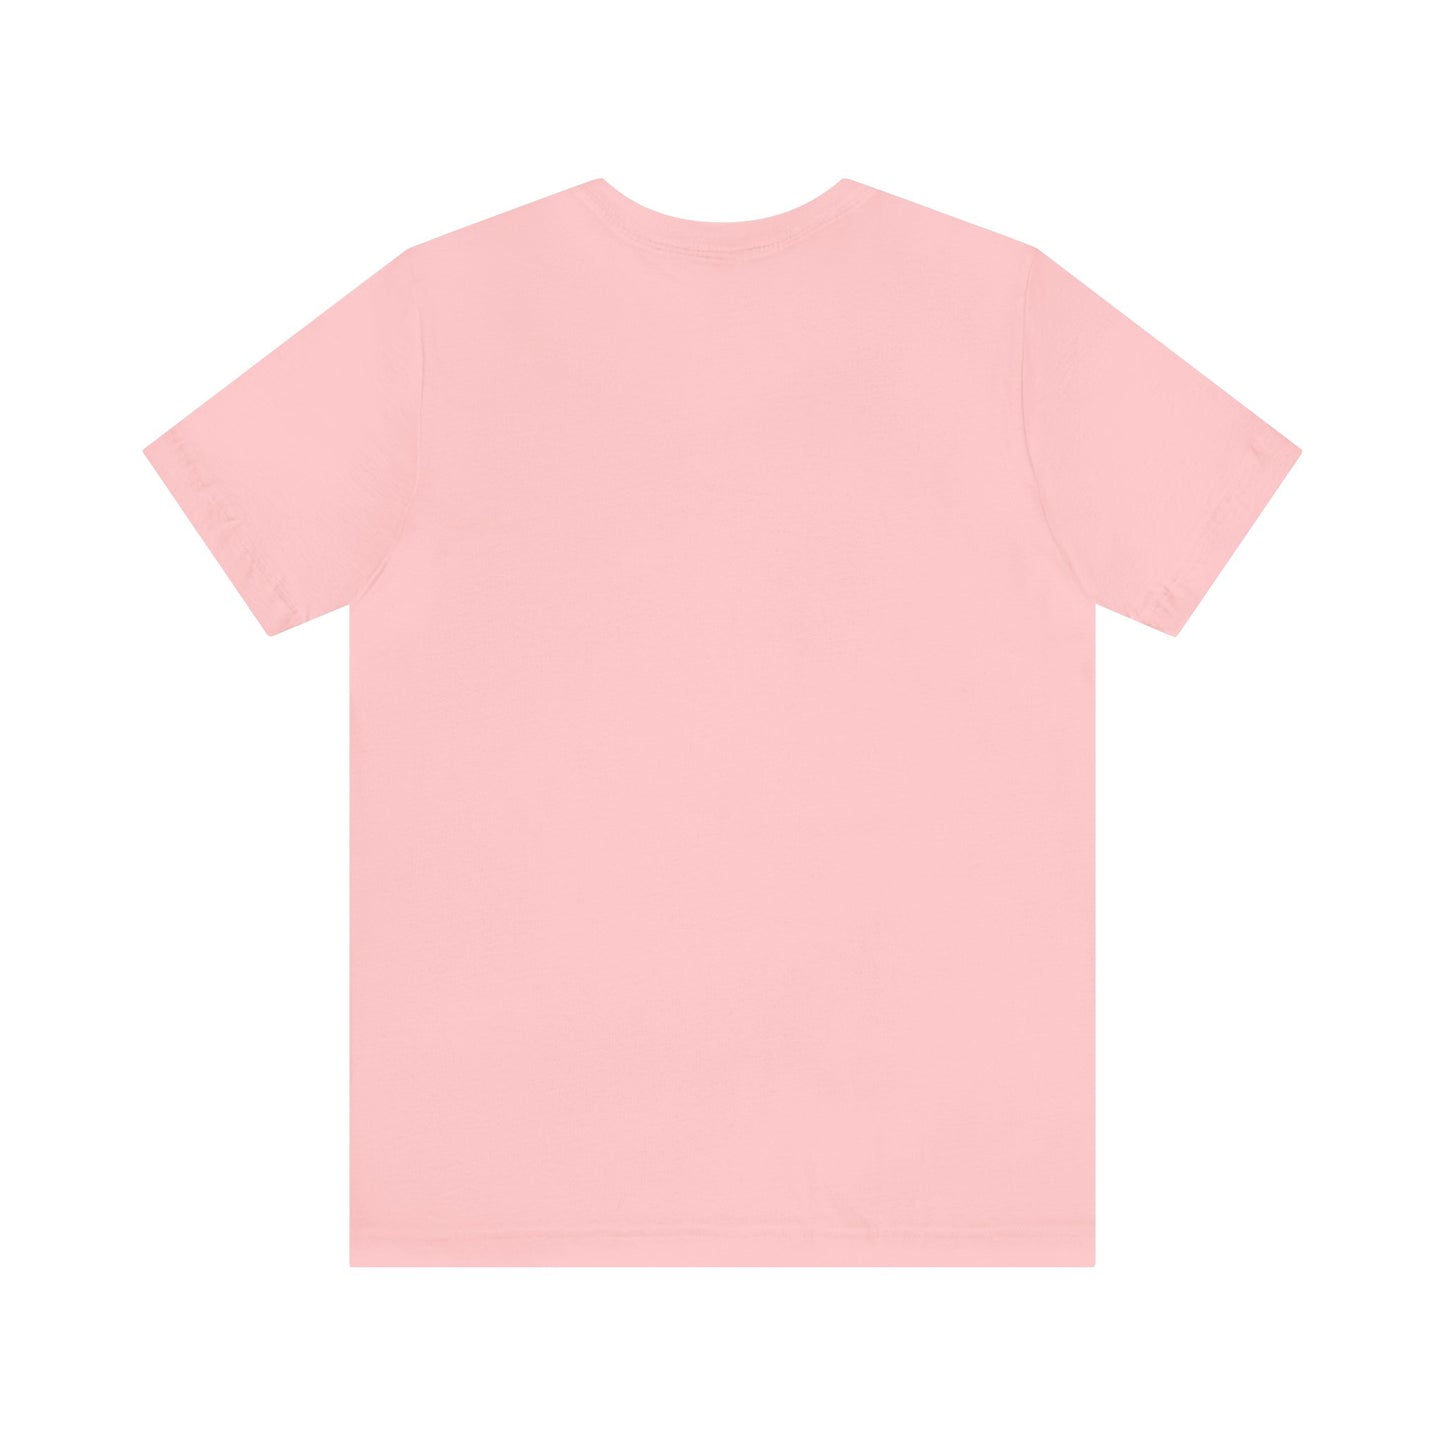 Memaw Easter Shirt - Unisex Jersey Short Sleeve Tee